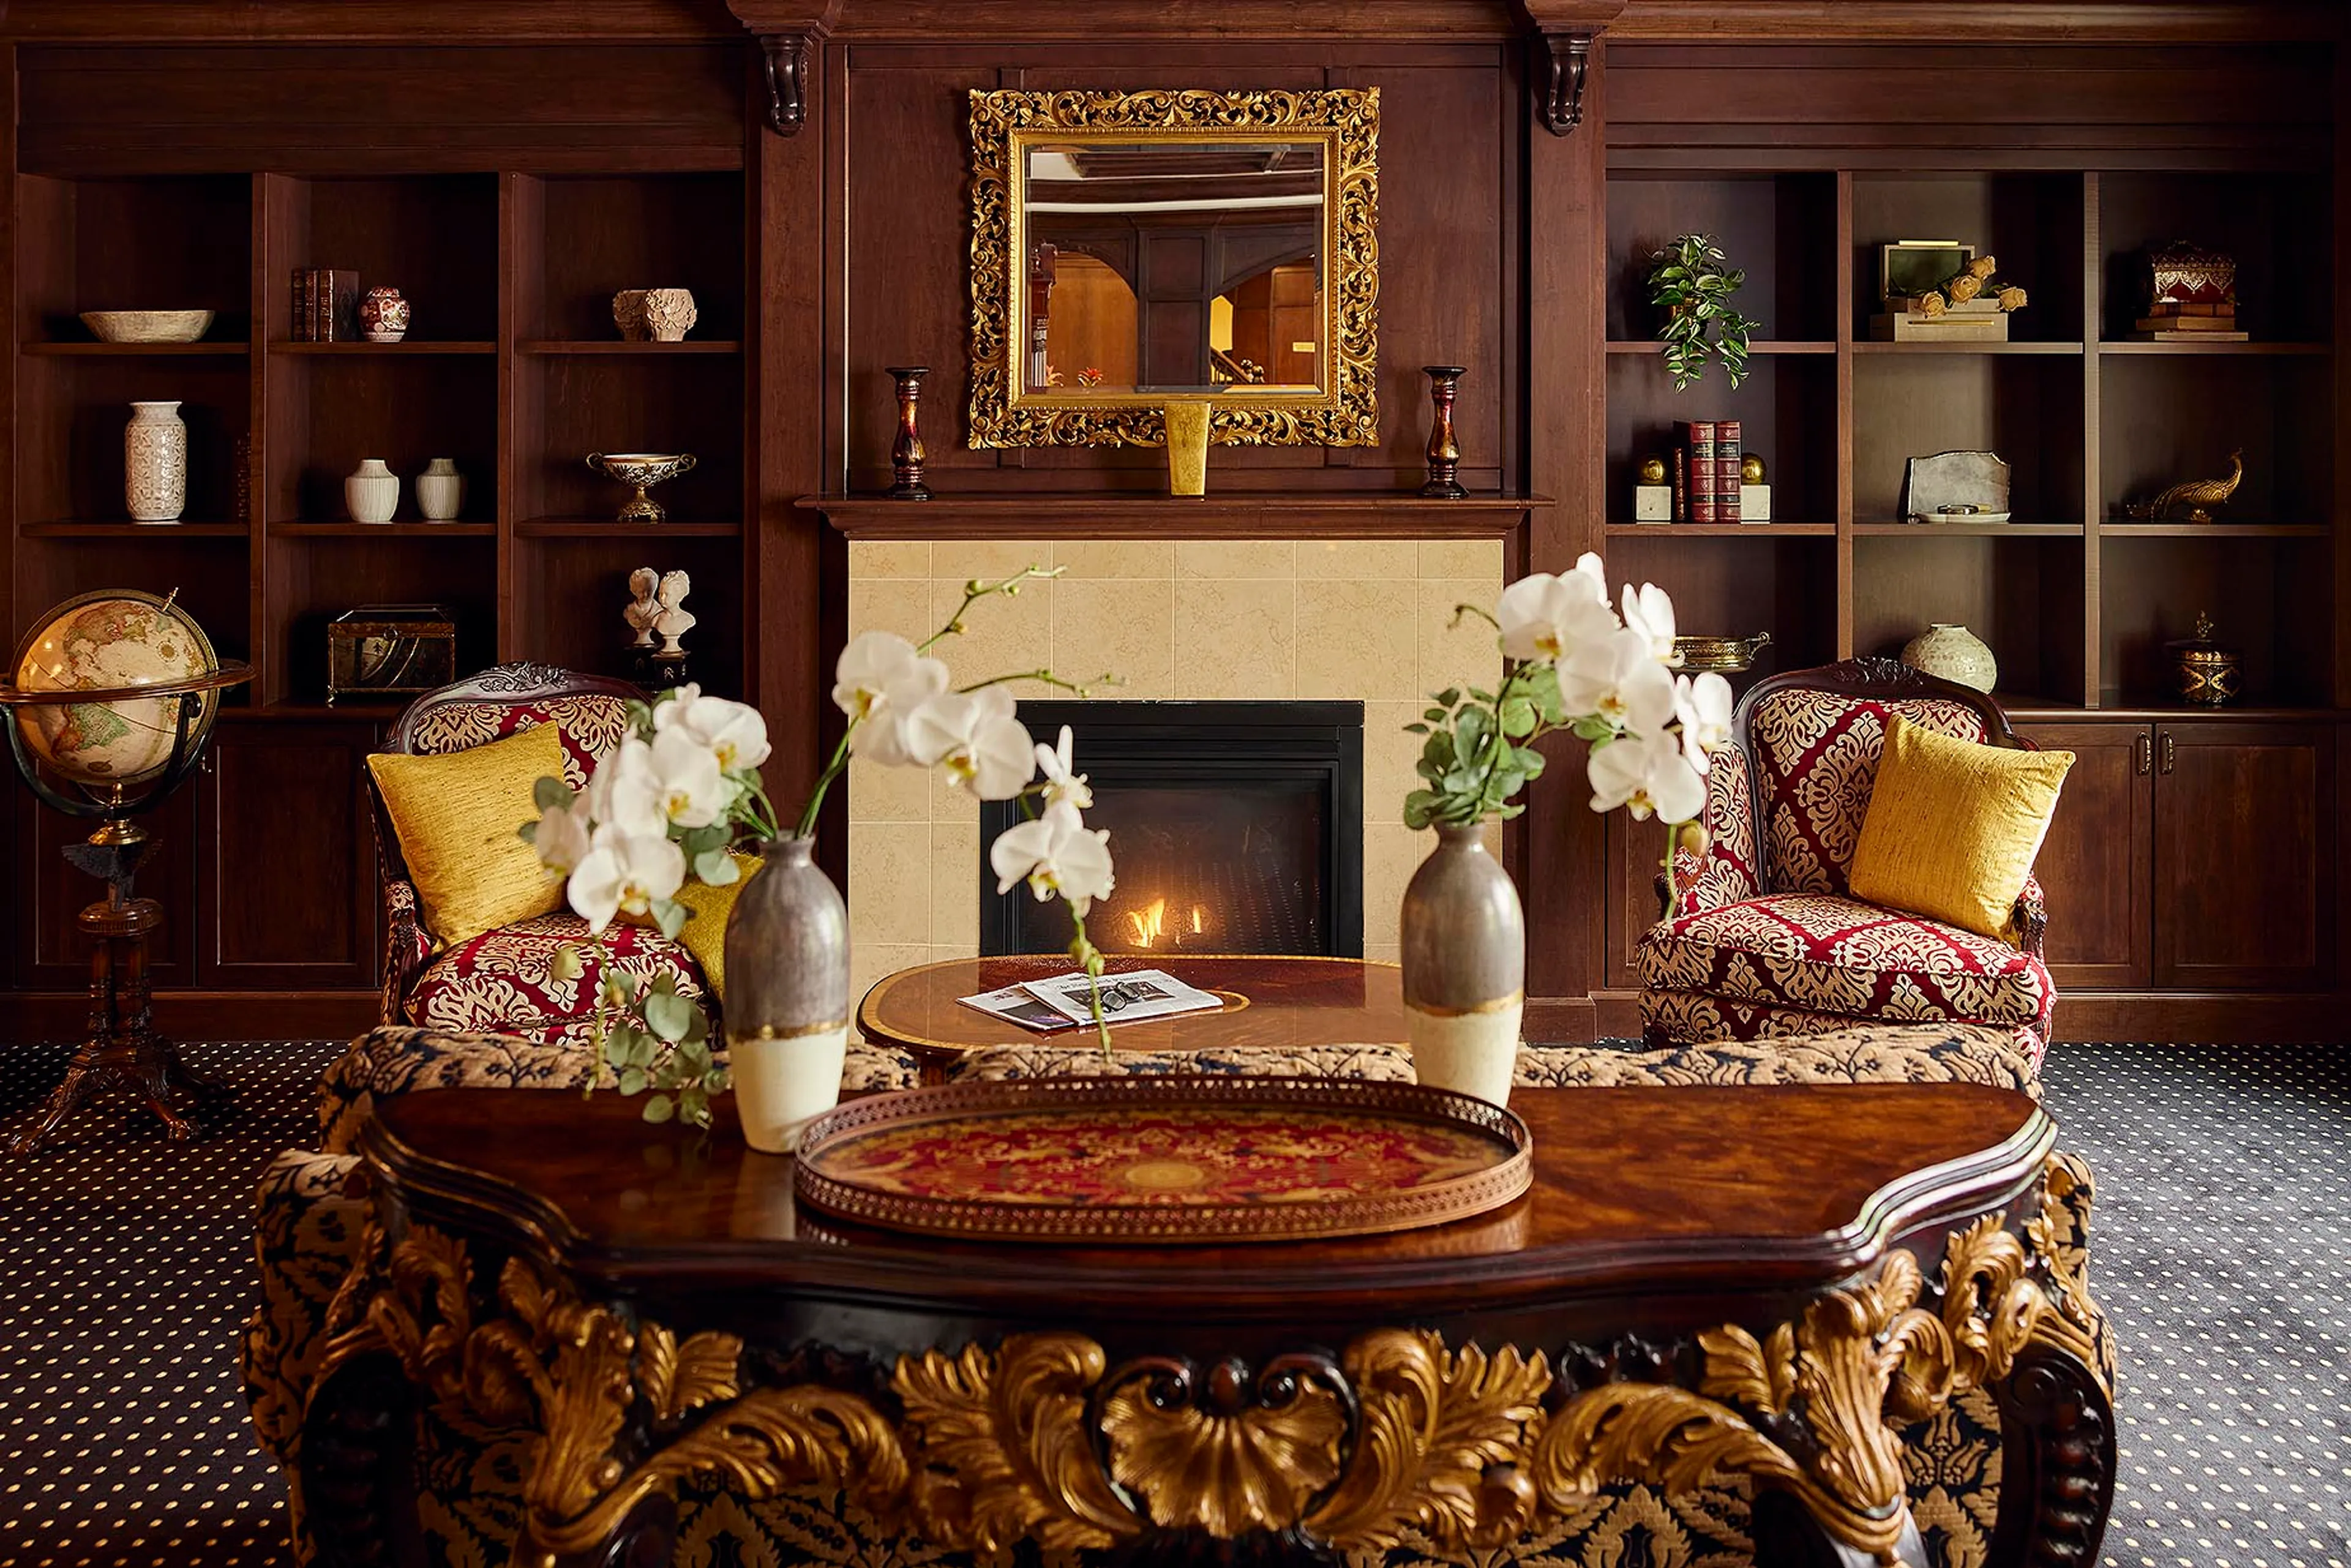 Elegant fireside seating in the living room